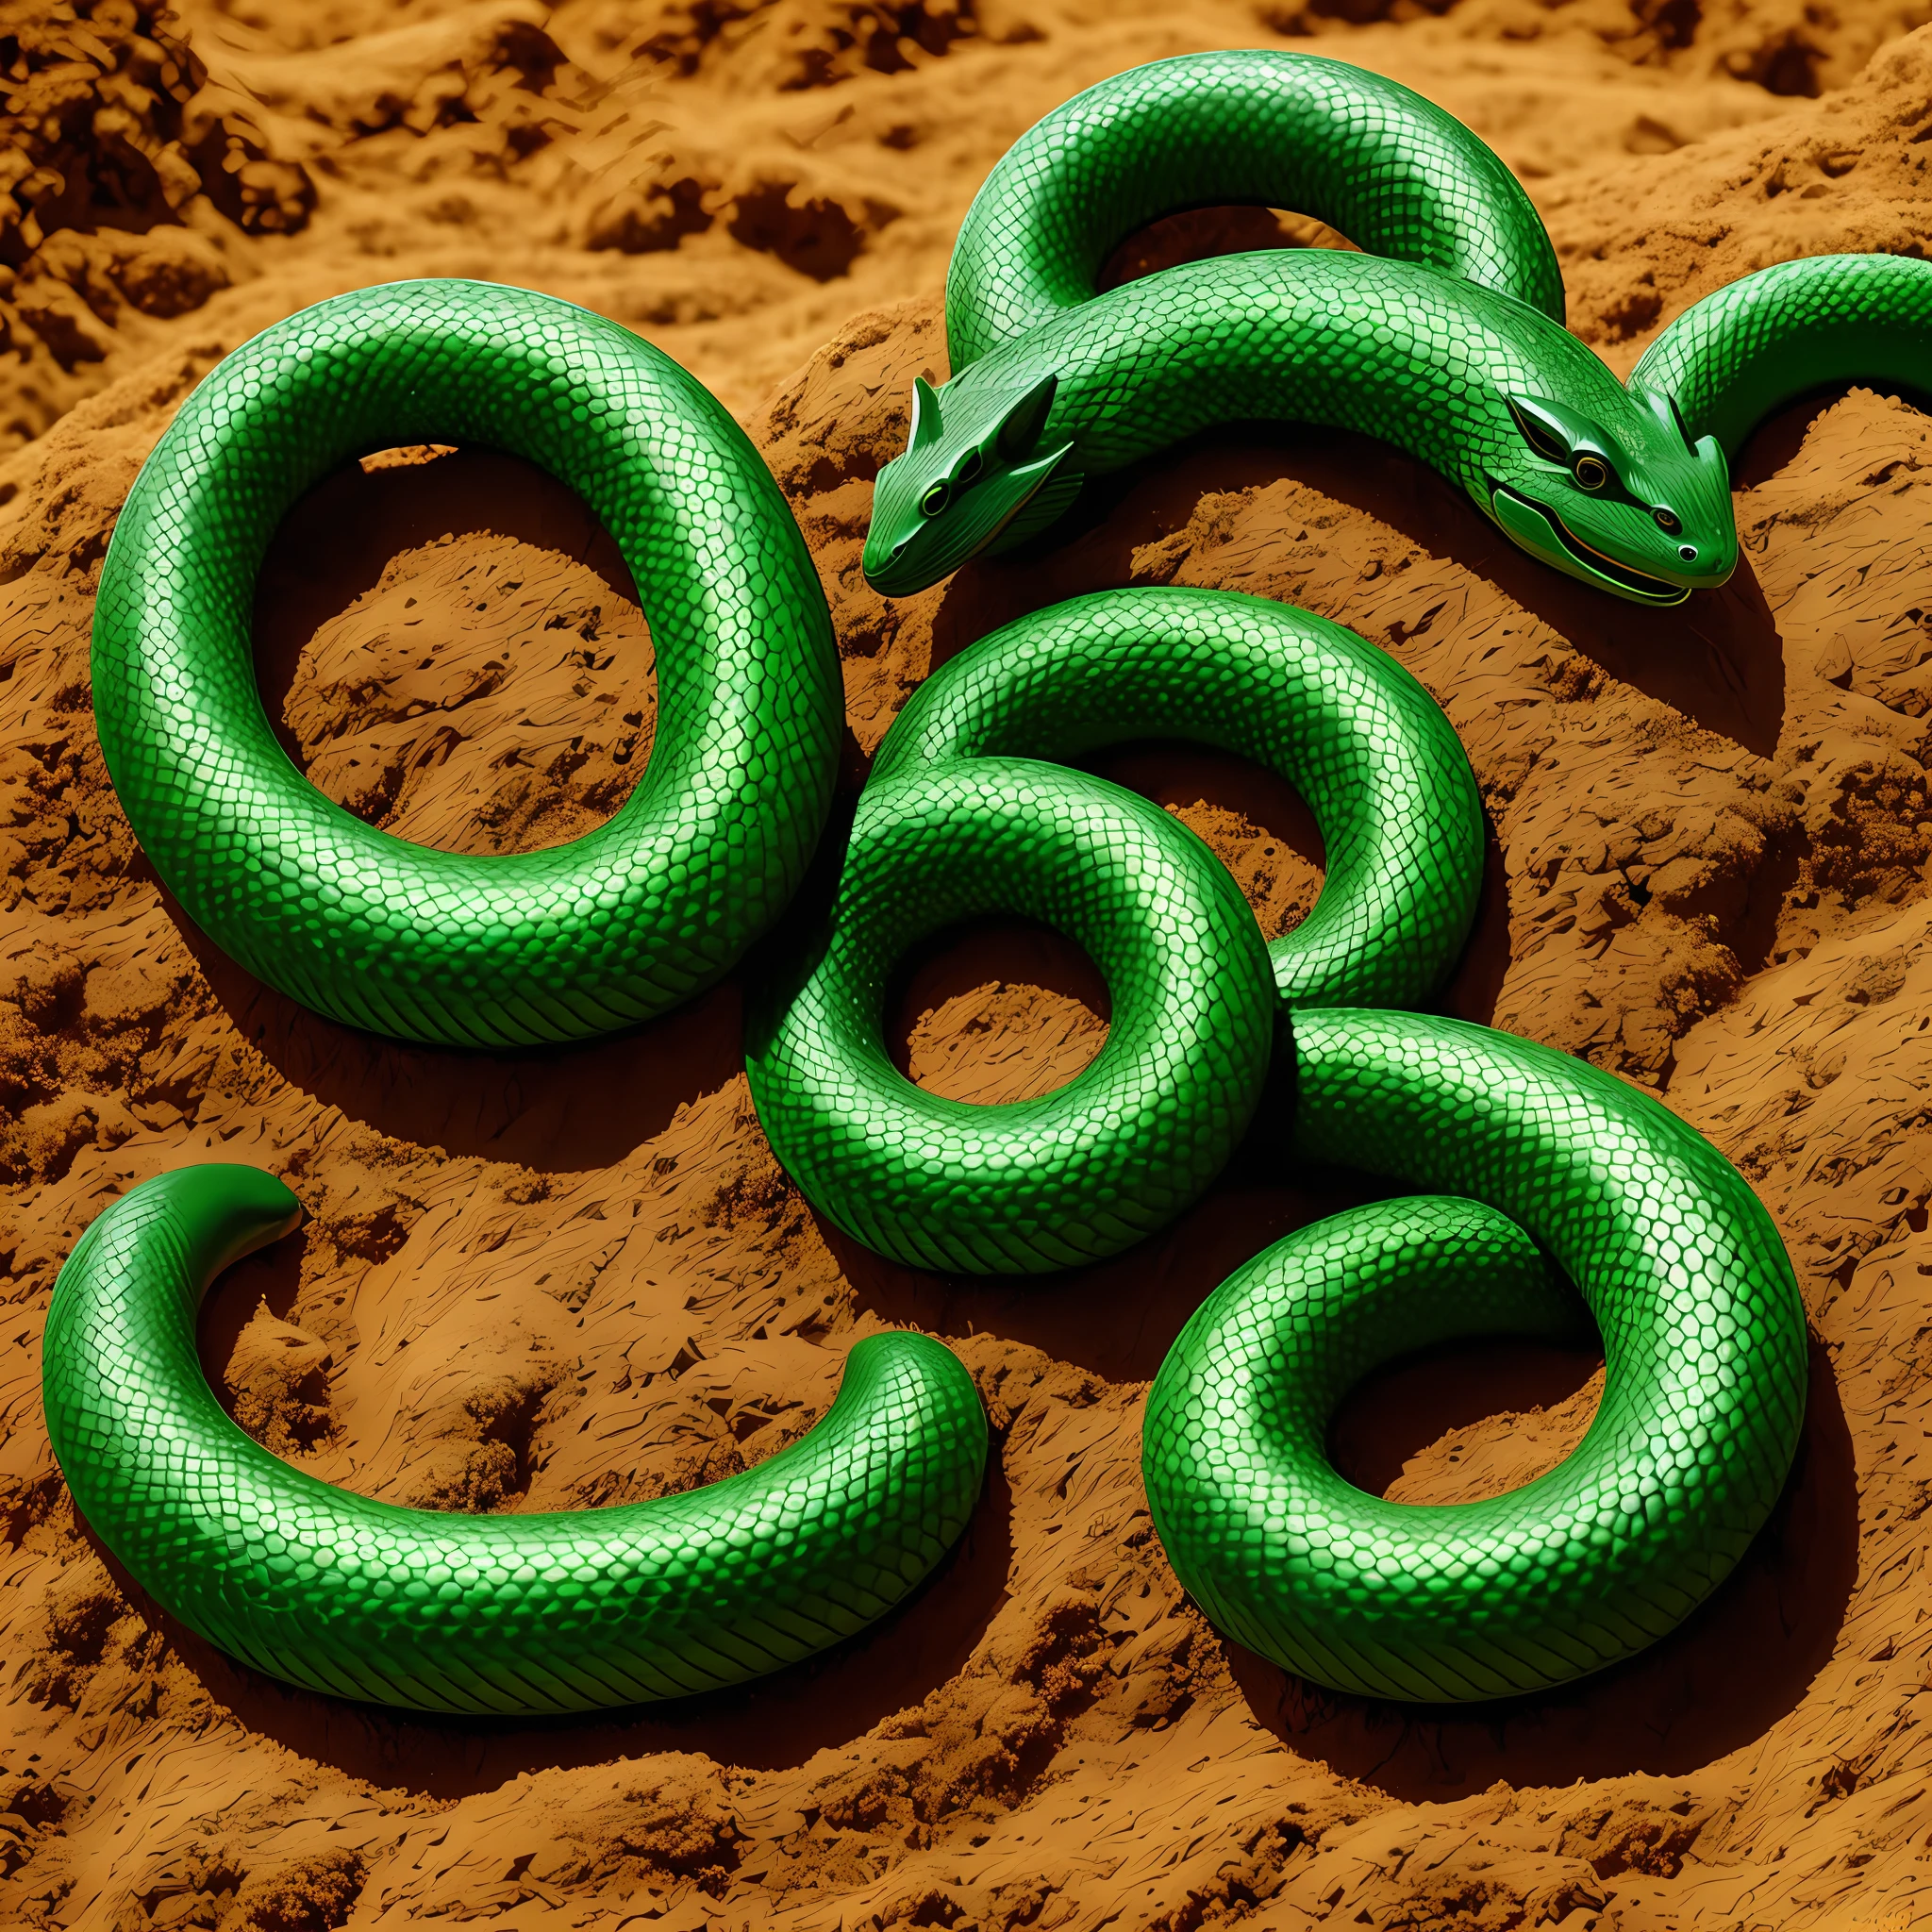 serpente verde no formigueiro fantasia realista